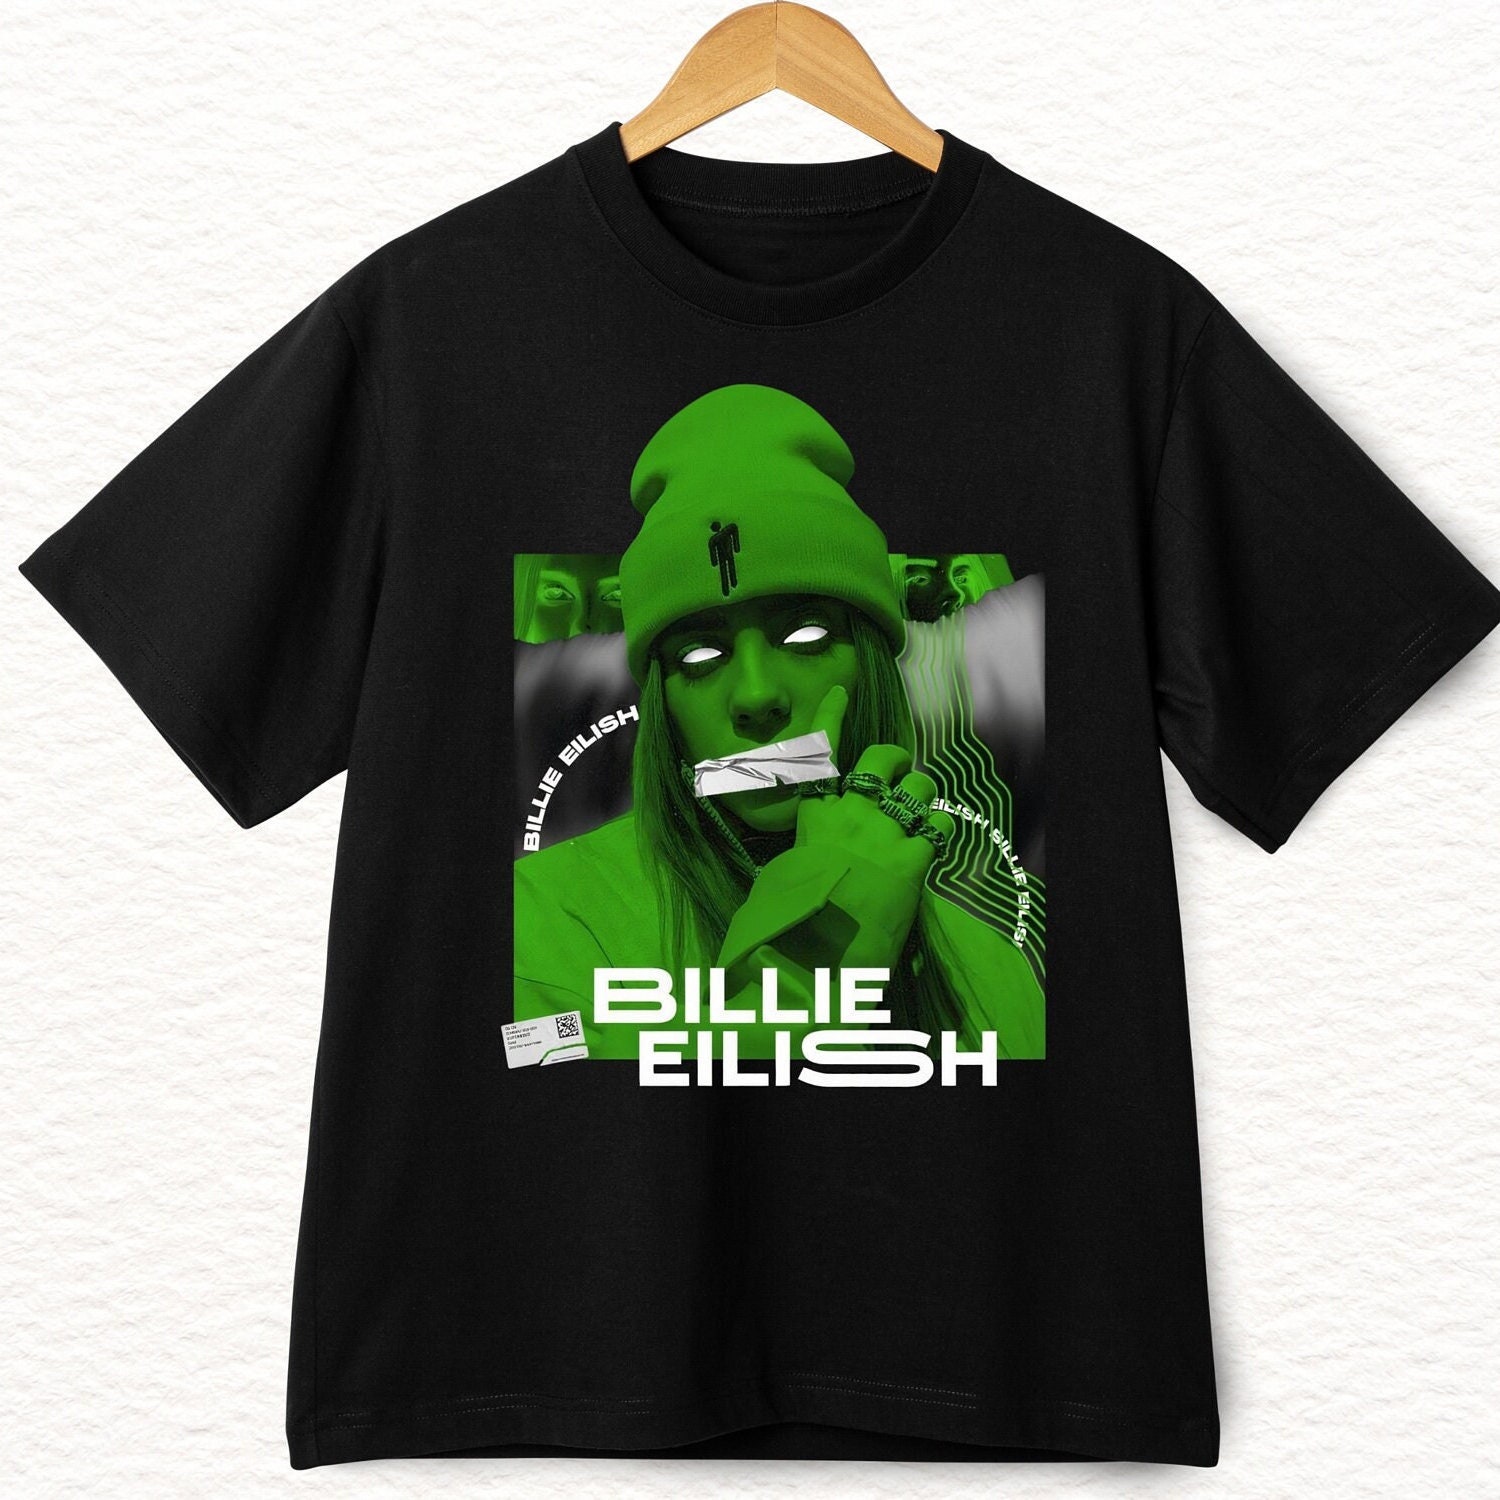 Billie Eilish Shirt, Unisex Shirt, Pop Music Shirt